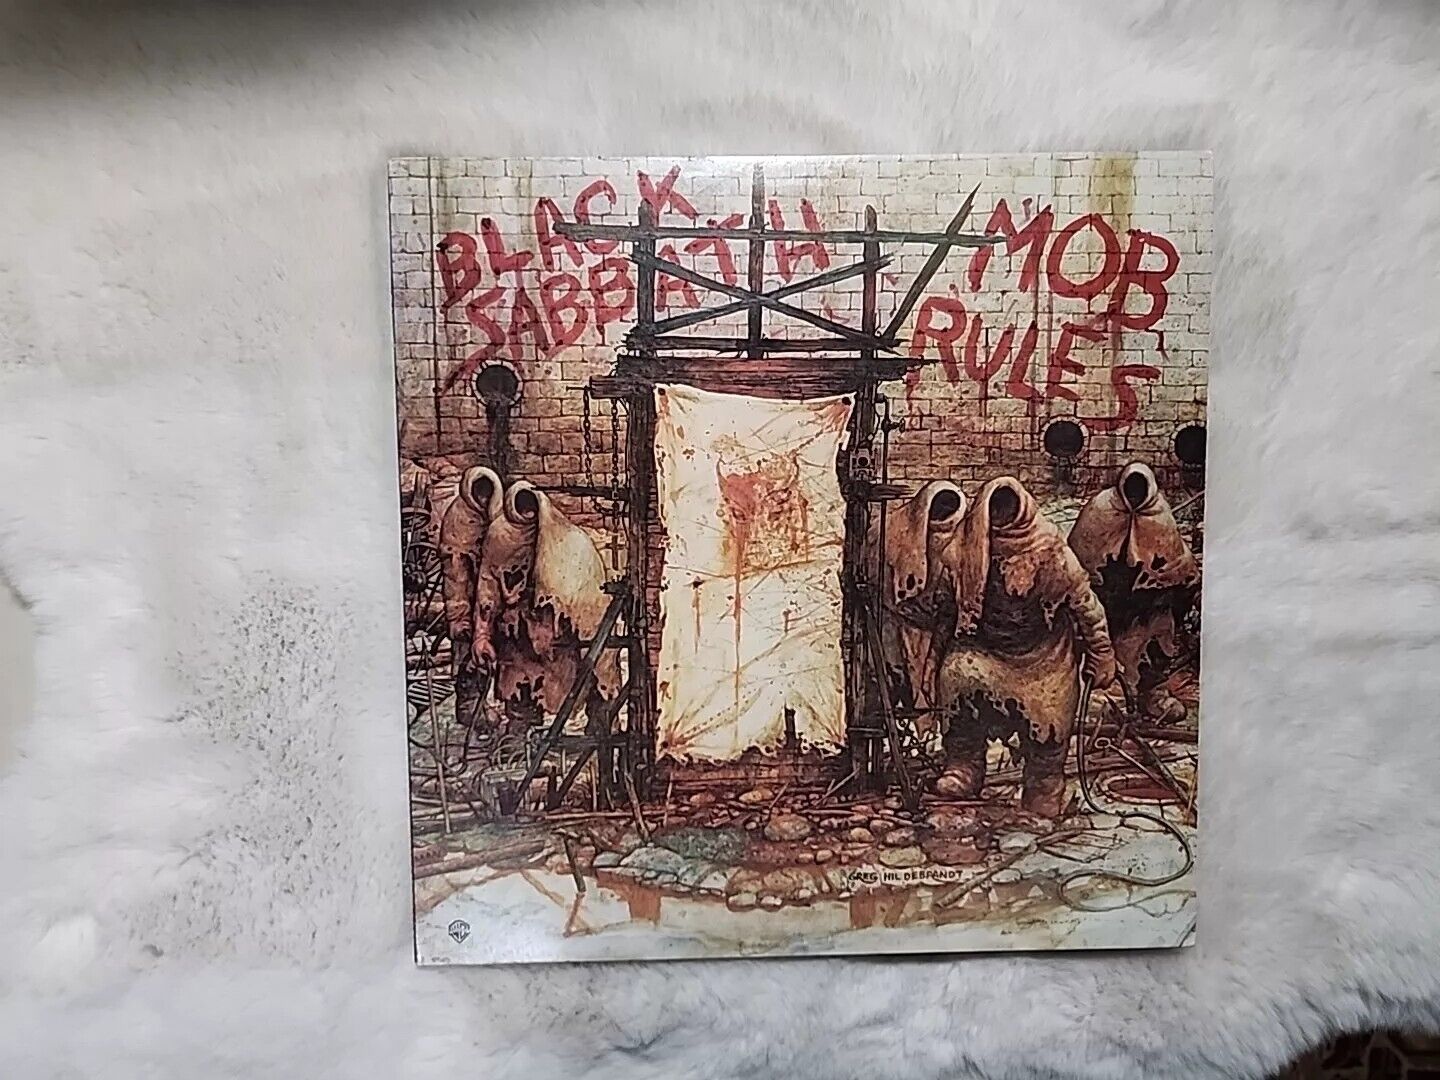 Black Sabbath Mob Rules Vinyl 1ST 1981 Original BSK 3605 LP Rock Heavy Metal 